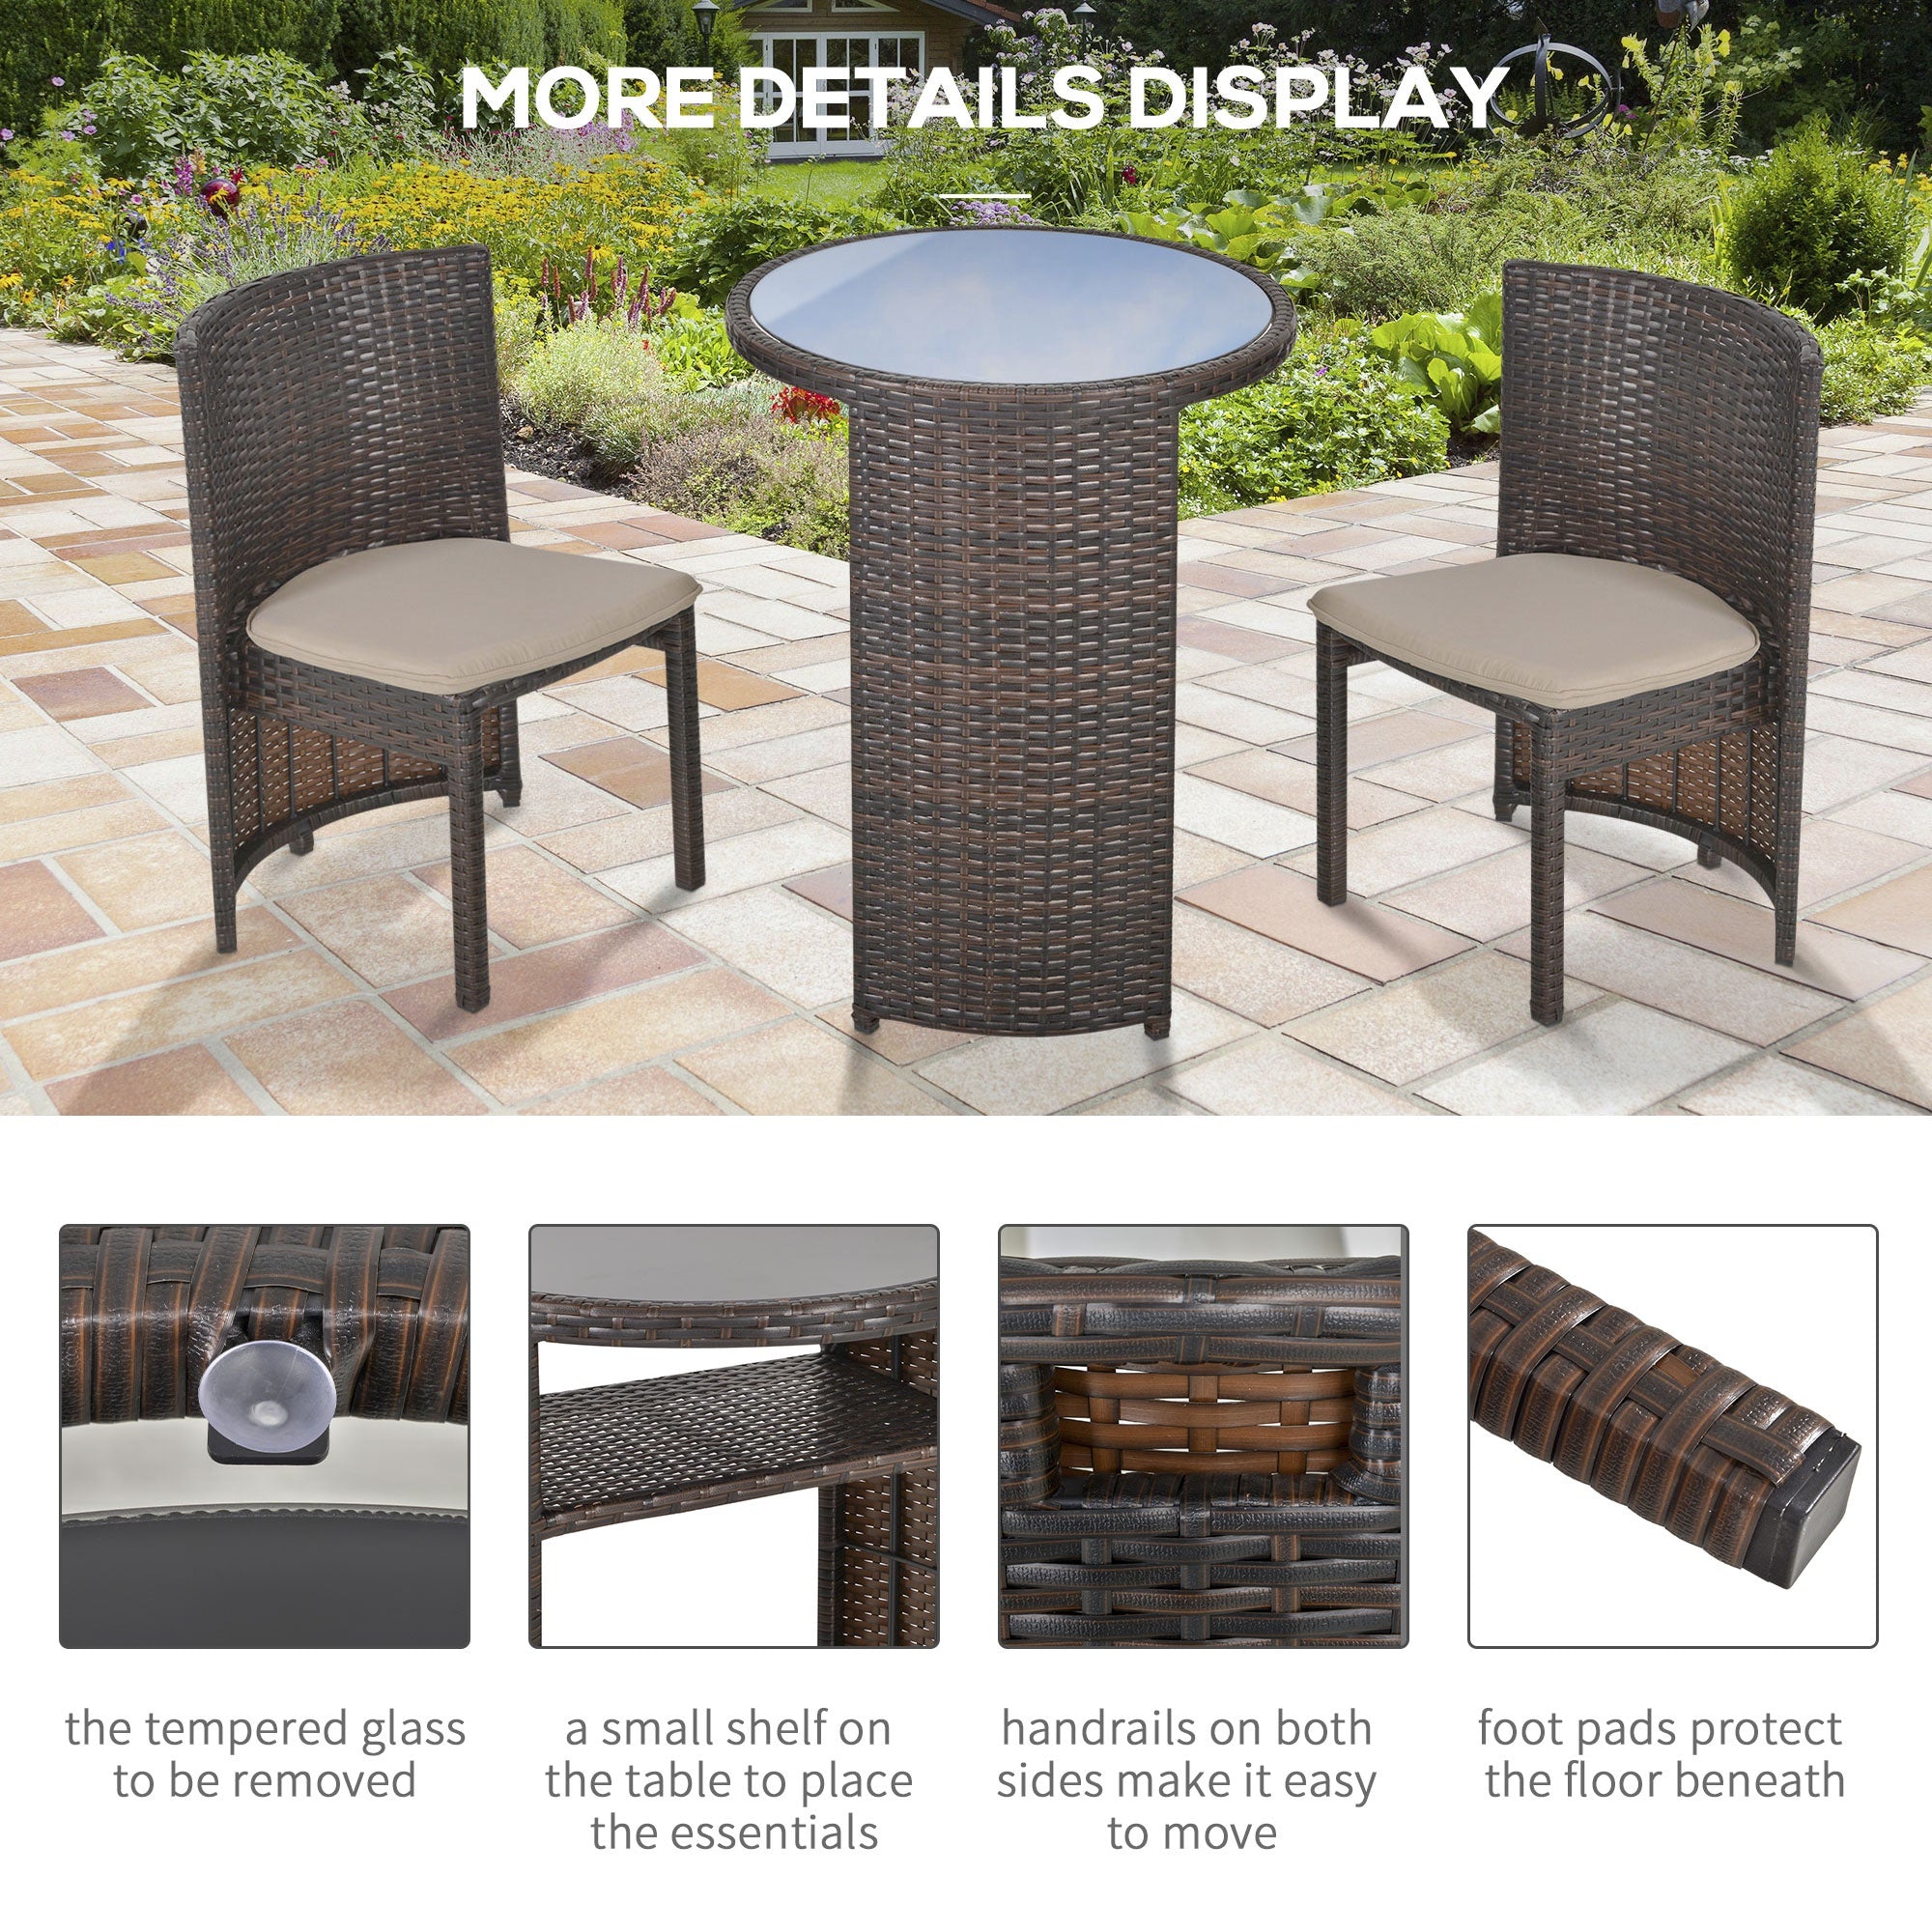 3 Piece Outdoor Rattan Wicker Bistro Set with Storage Shelf Conversation Set for Garden Backyard Porch